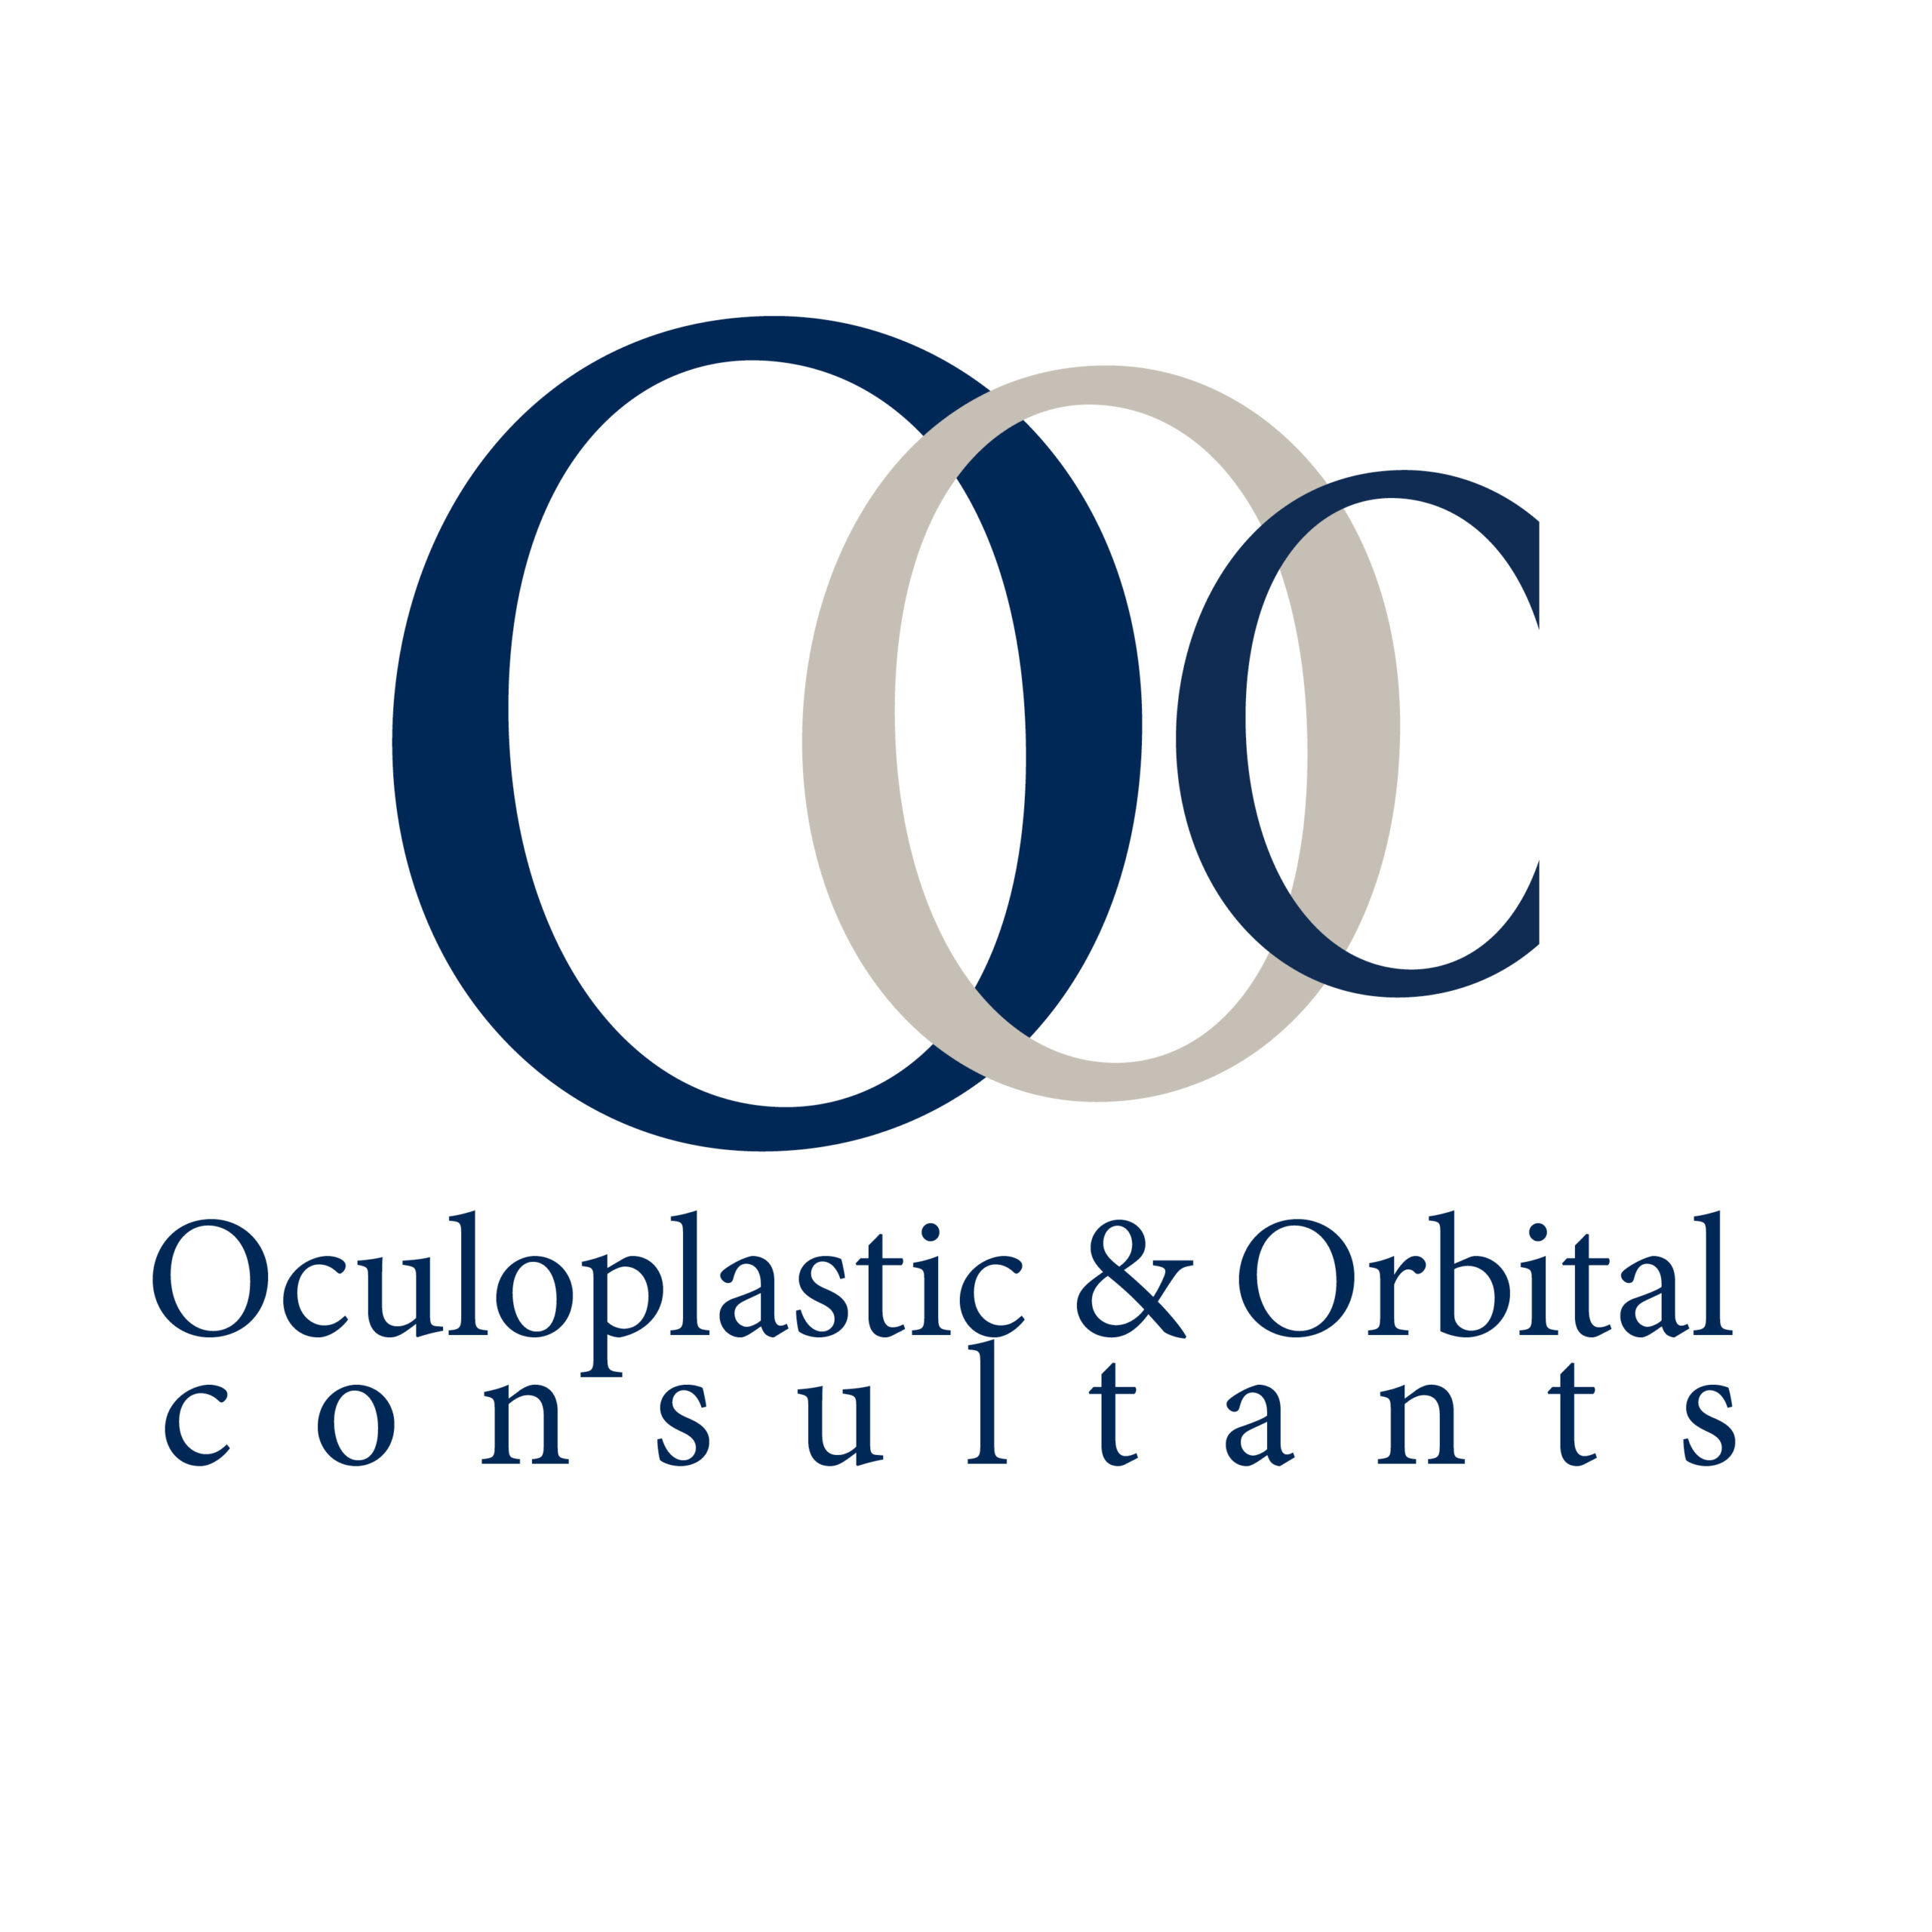 OOC_Logo_Vertical